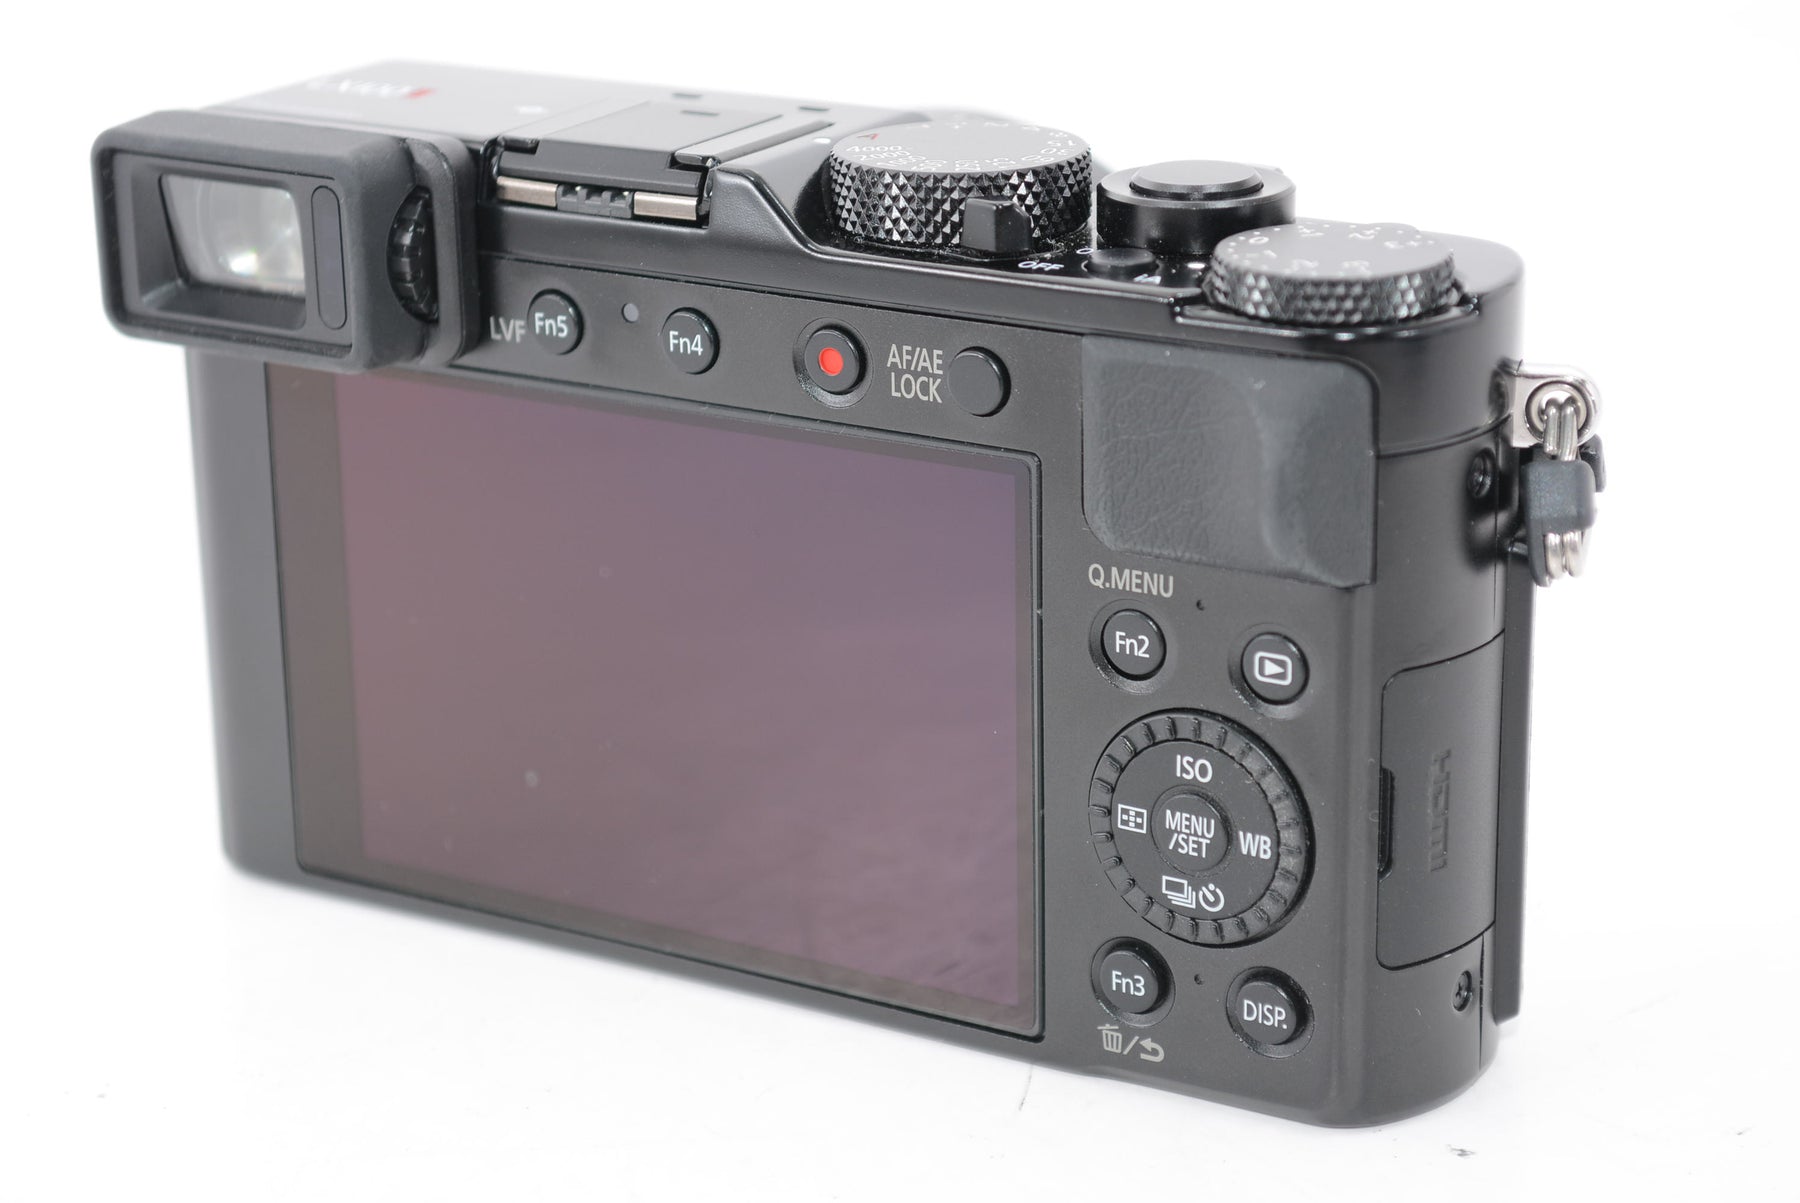 【外観特上級】パナソニック コンパクトデジタルカメラ ルミックス LX100M2  DC-LX100M2